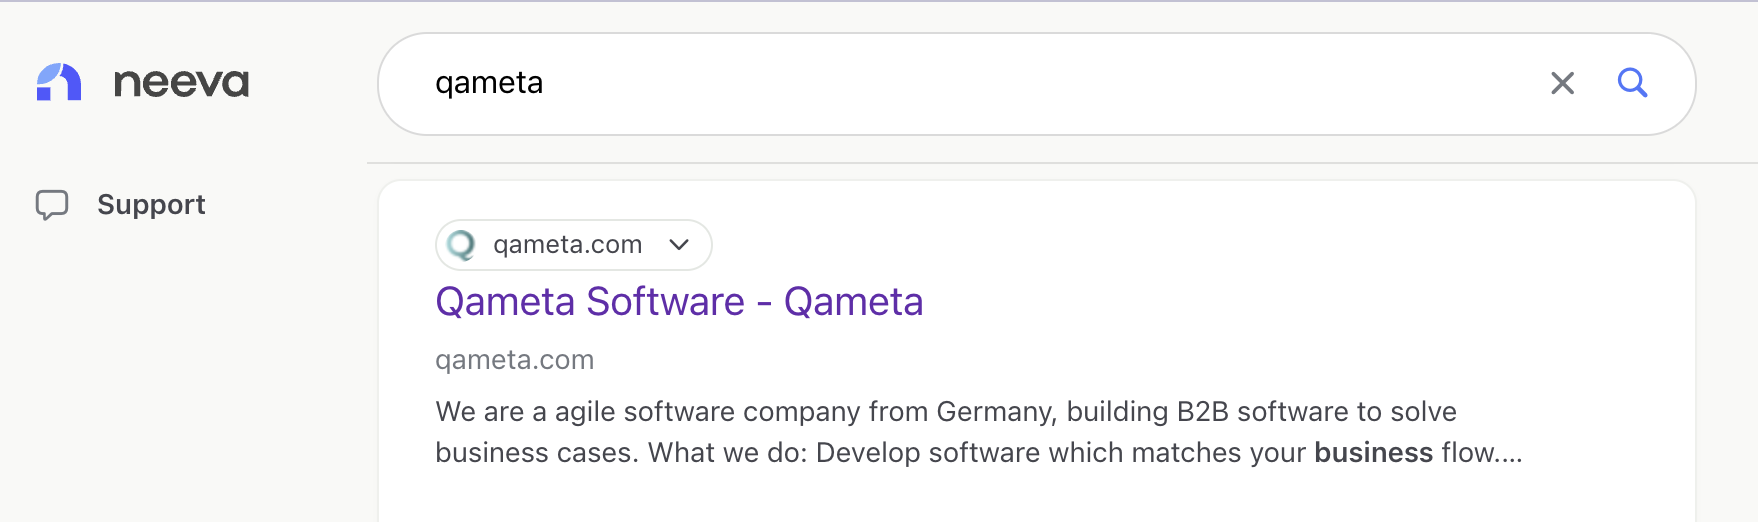 neeva search results for qameta